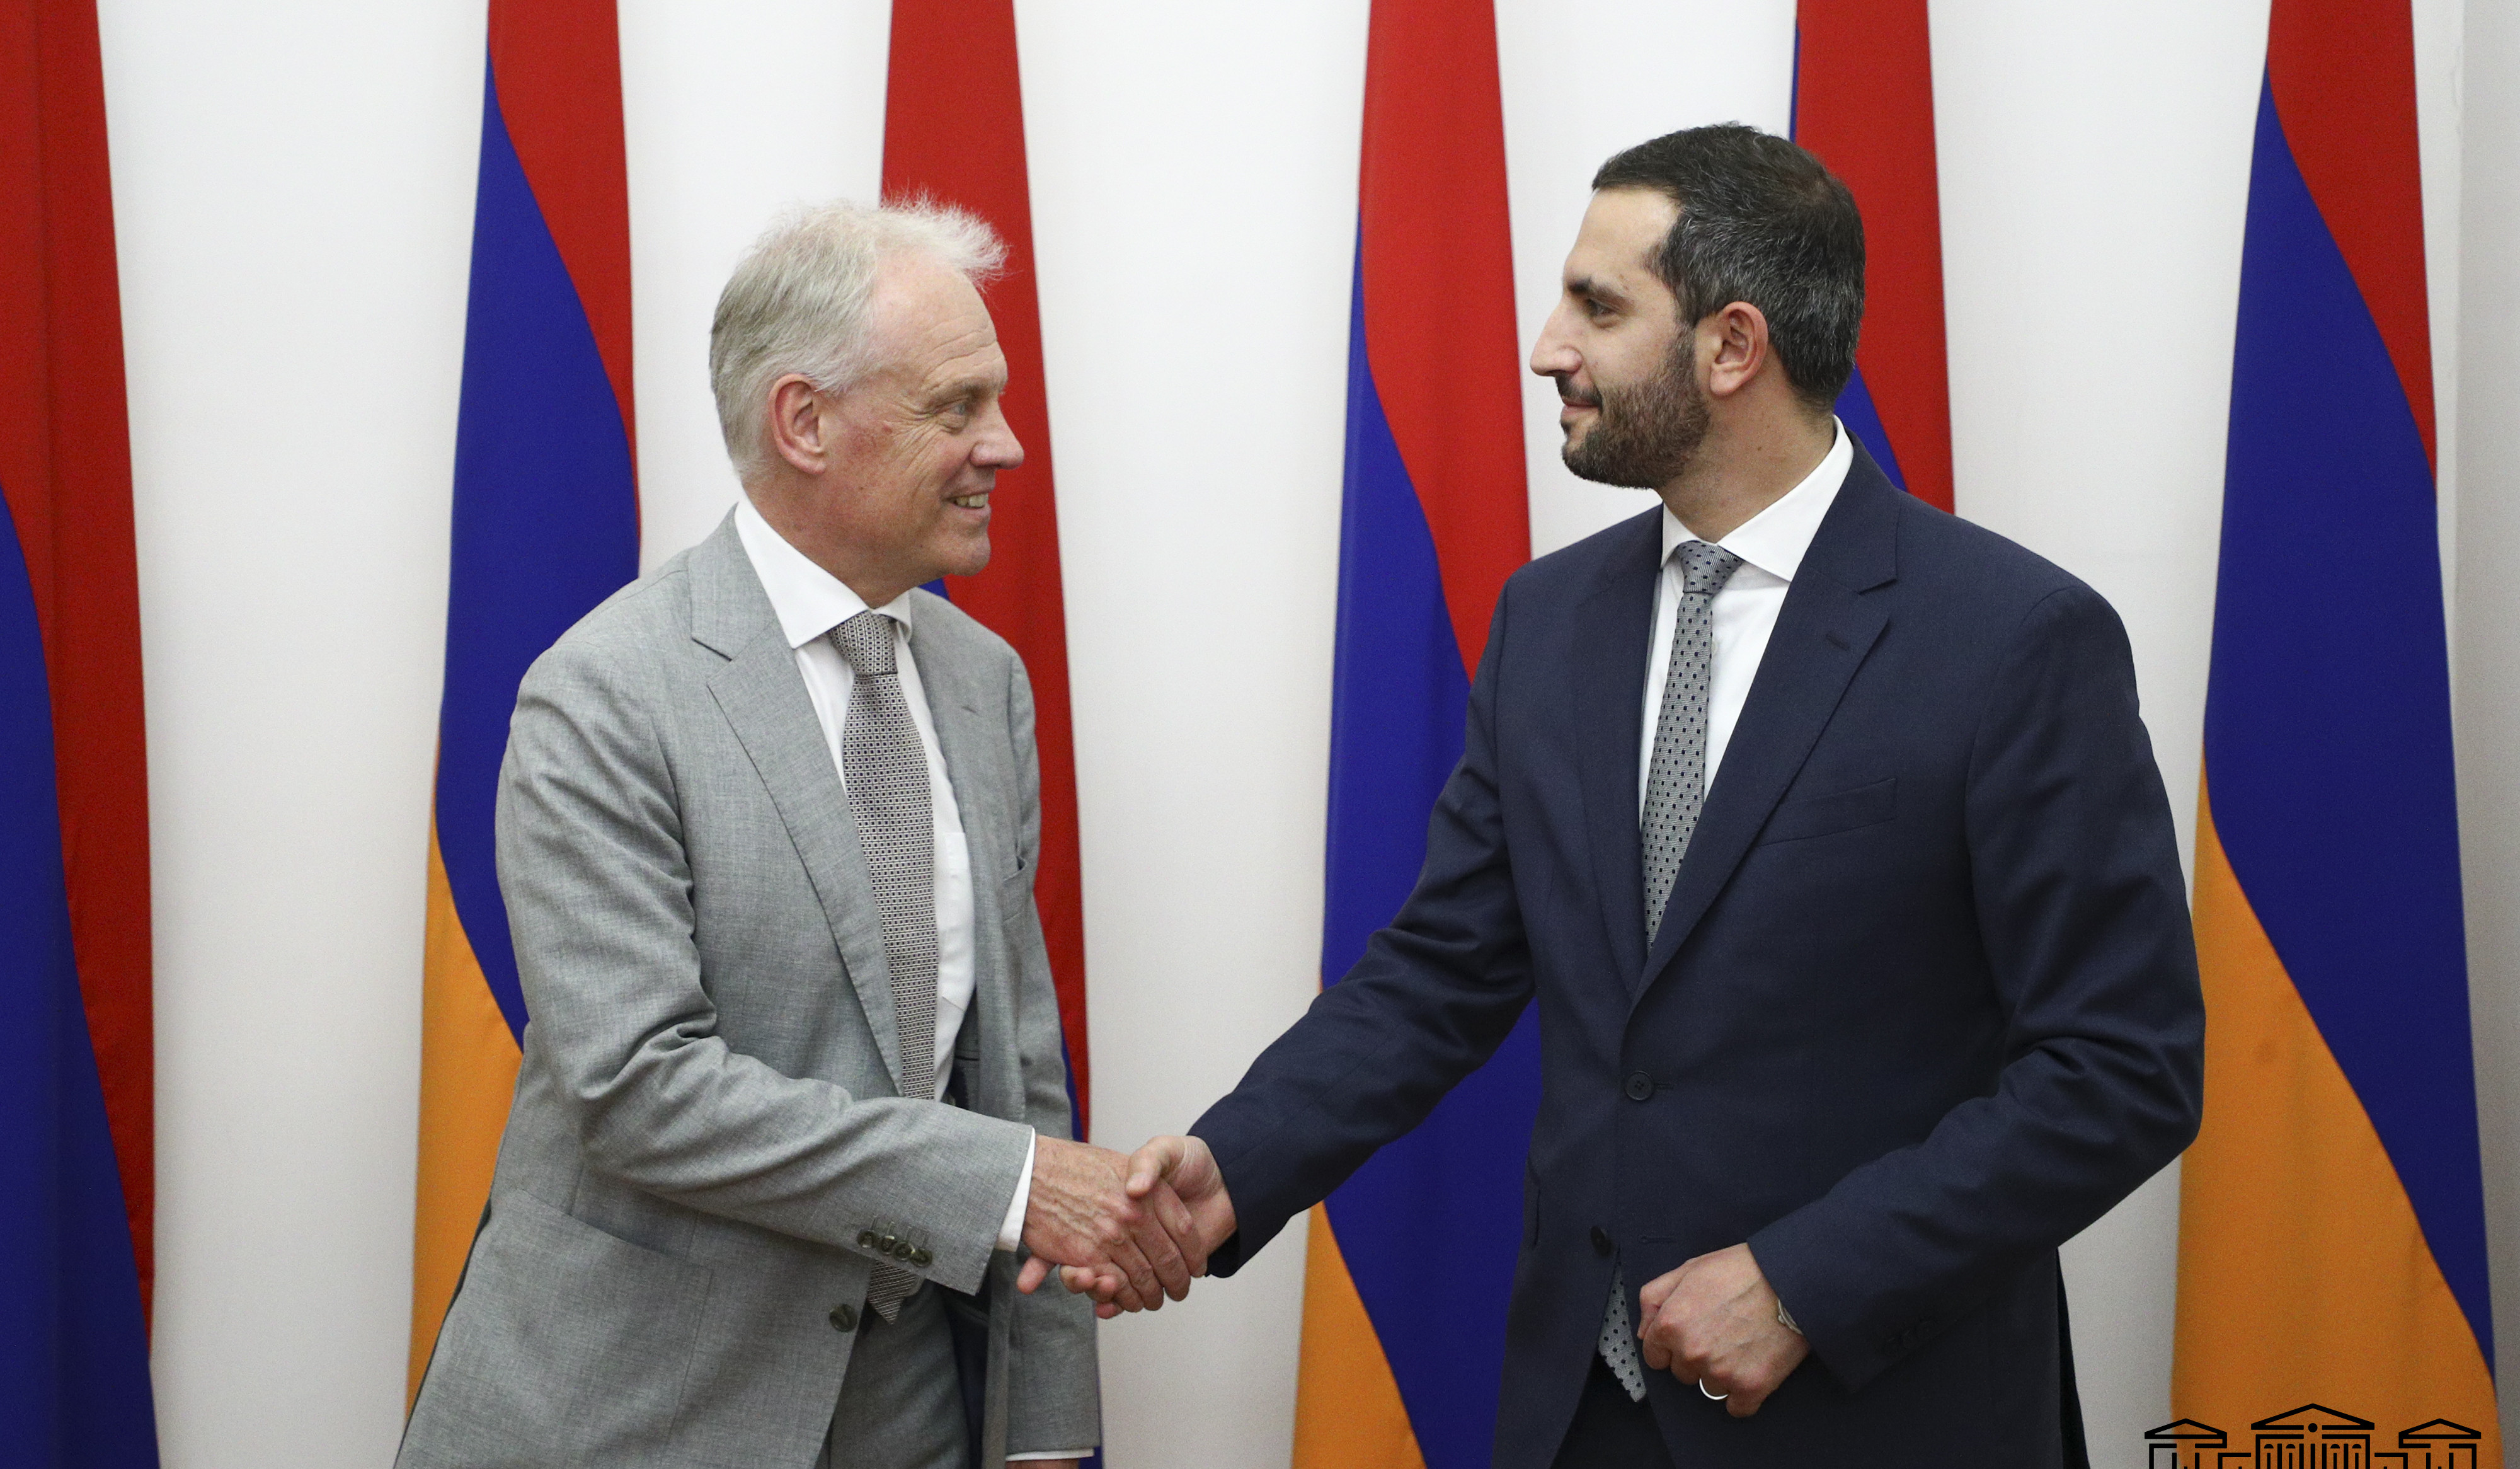 Ռուբինյանն ու Կոոպմանը քննարկել են Հայաստան-ԵՄ հարաբերությունների ամրապնդմանն ուղղված քայլերը